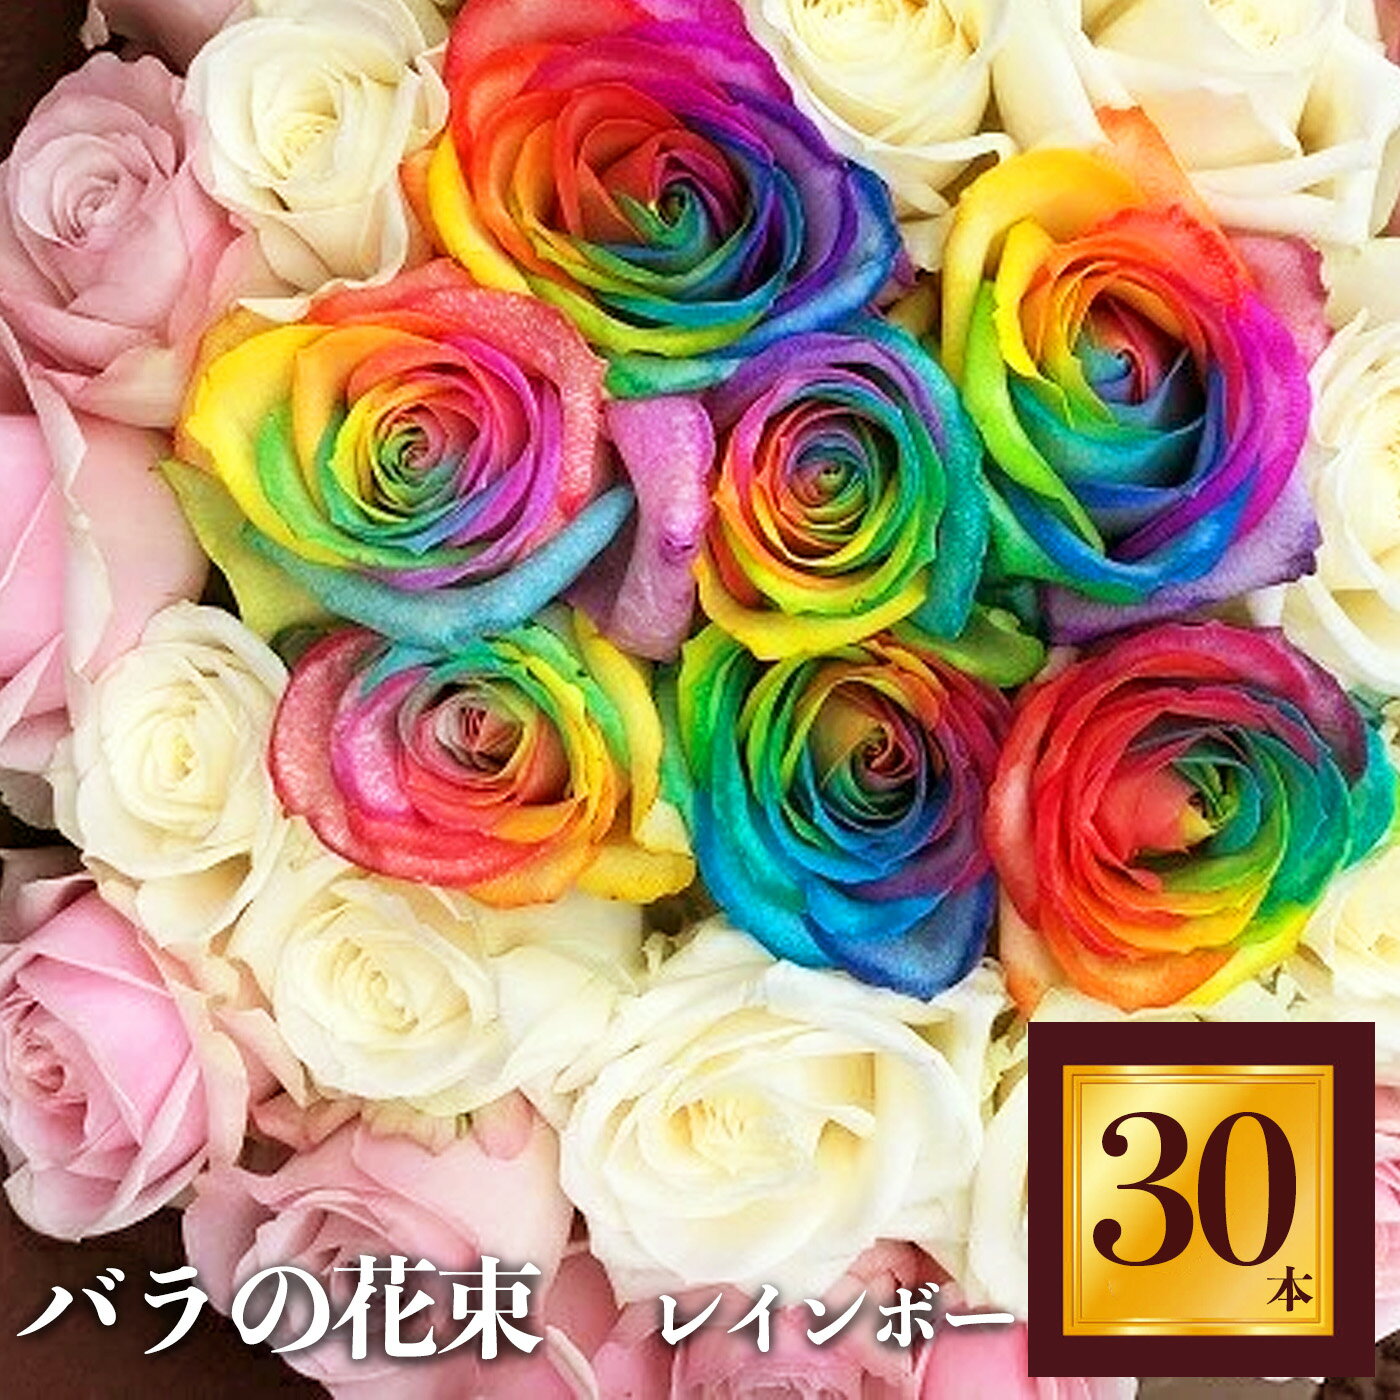 3位! 口コミ数「0件」評価「0」Heguri Rose バラの花束 30本（レインボー7本+白+淡いピンク）ローズ フラワー 薔薇 新鮮 高品質 綺麗 平群のバラ 花束 平･･･ 